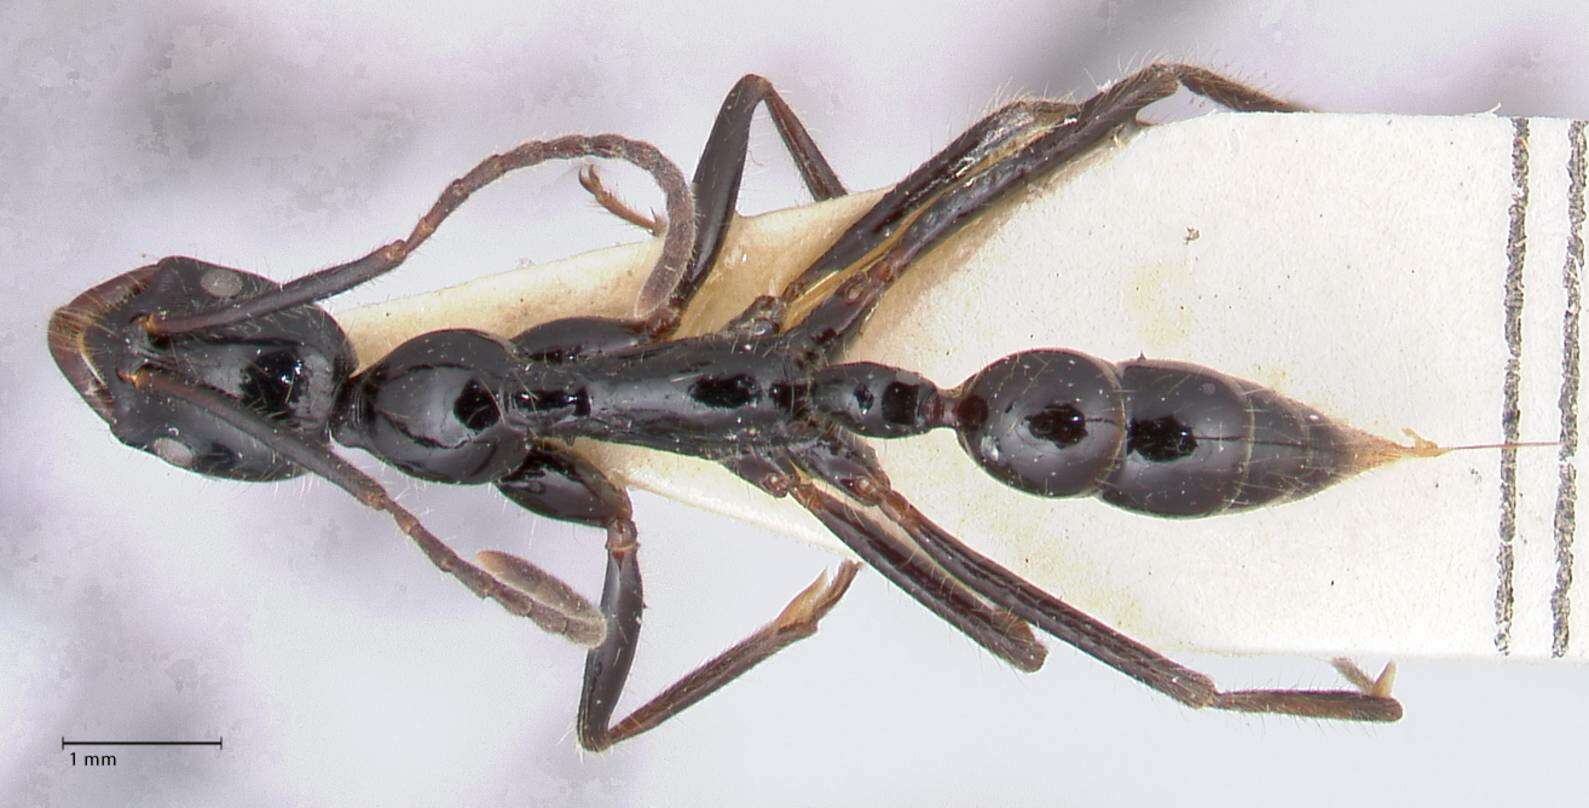 Image of Leptogenys papuana Emery 1897